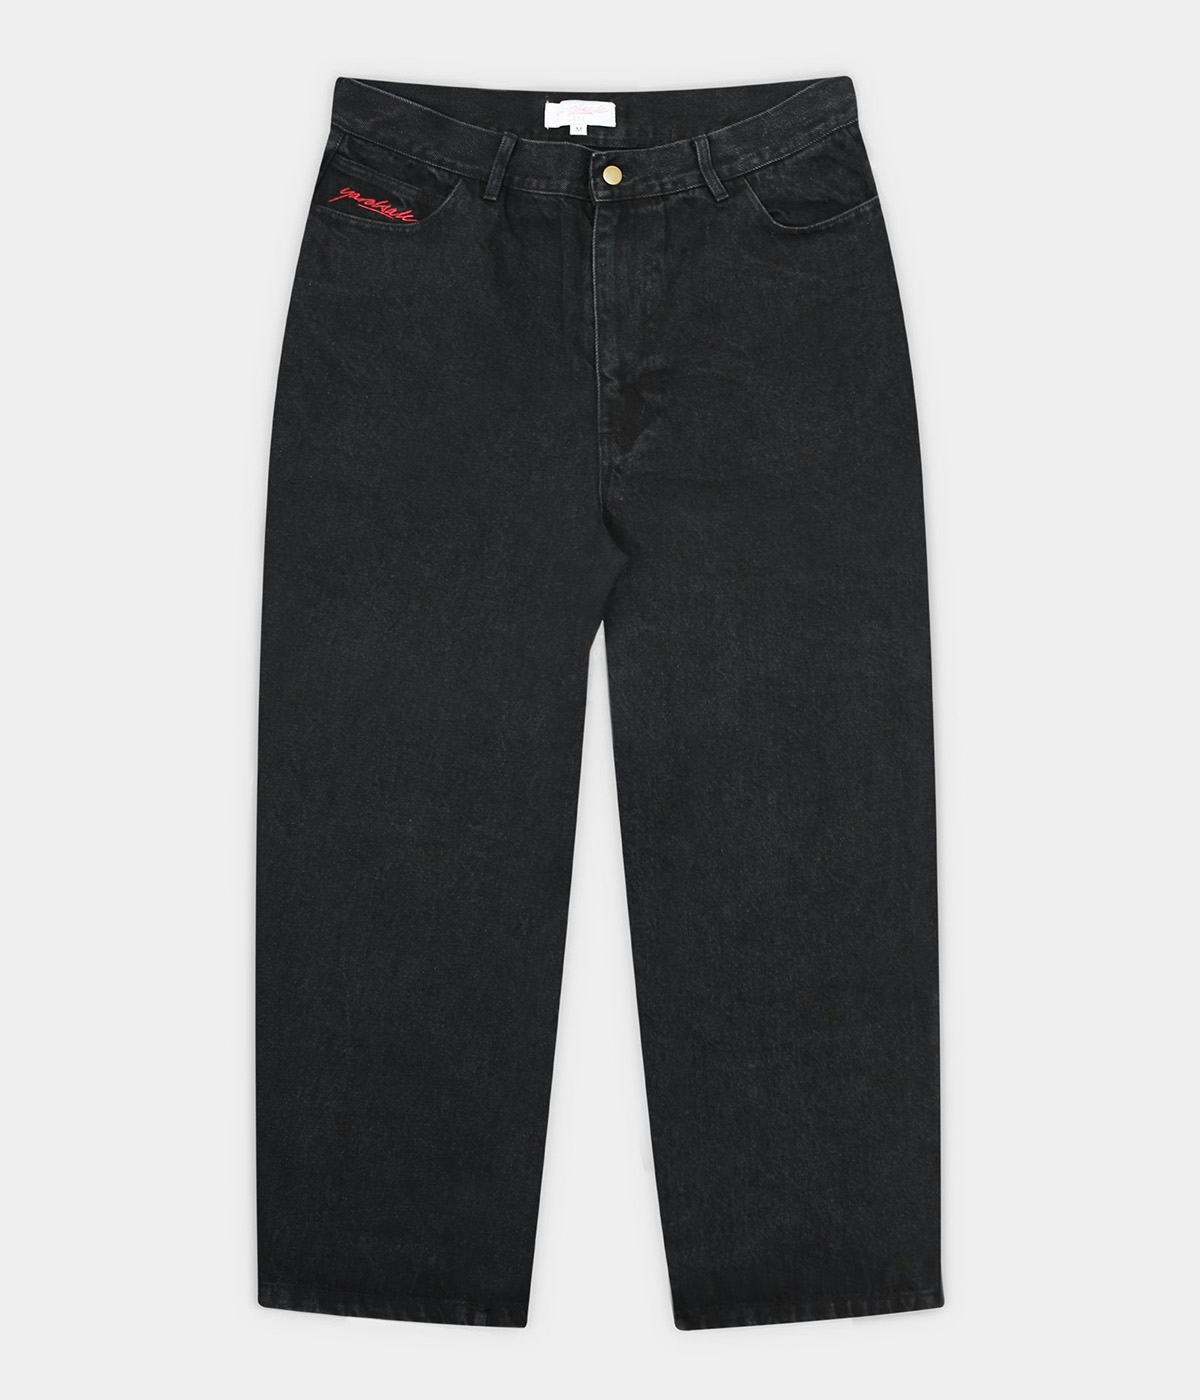 Yardsale Phantasy Jeans Washed Black 1